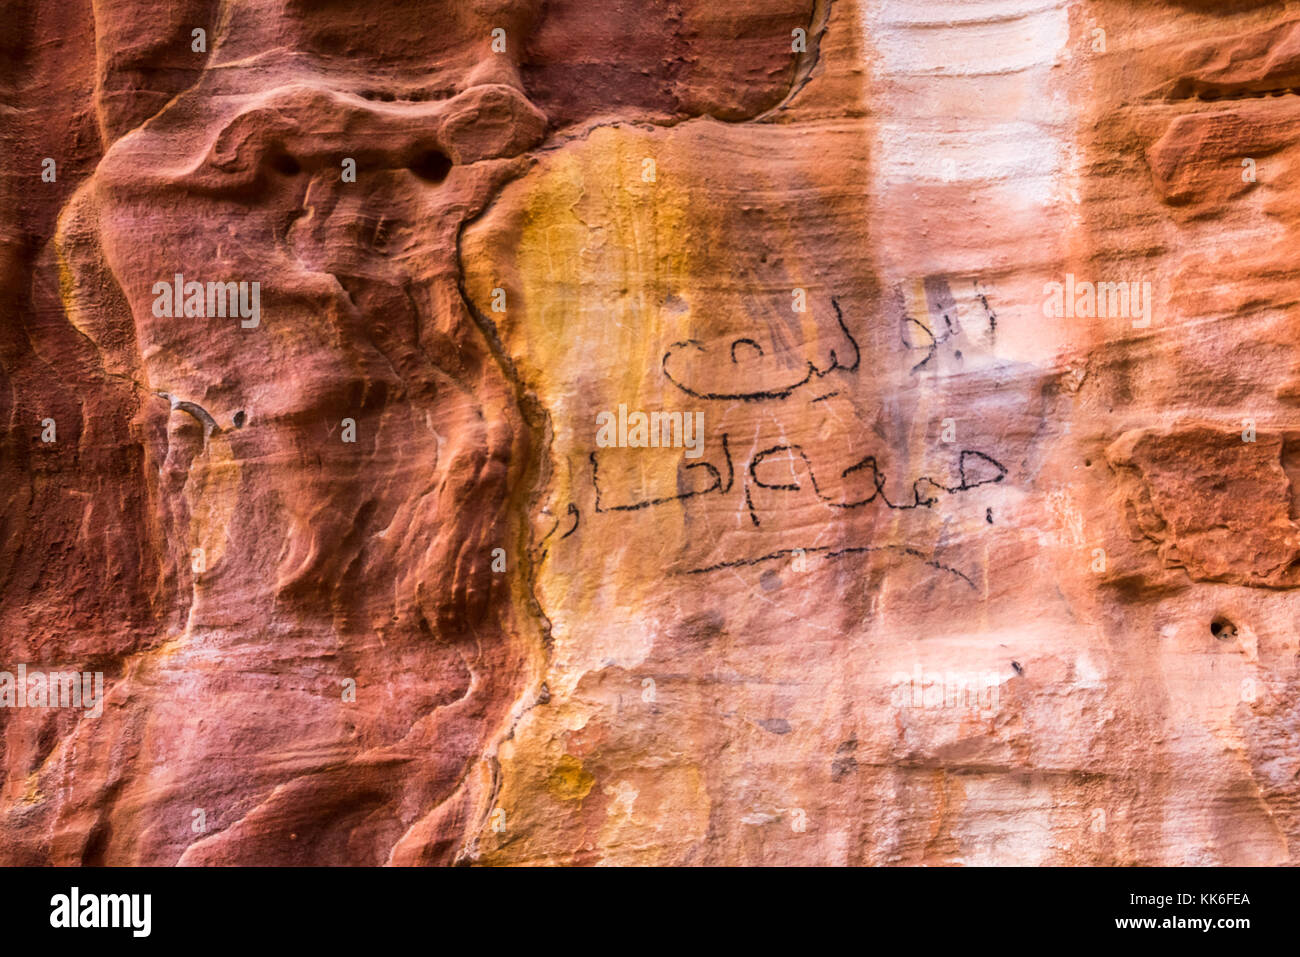 Cerca de arenisca rosada y naranja patrones de mineral en el acantilado, Petra, Jordania, Oriente Medio, con el Árabe graffiti Foto de stock